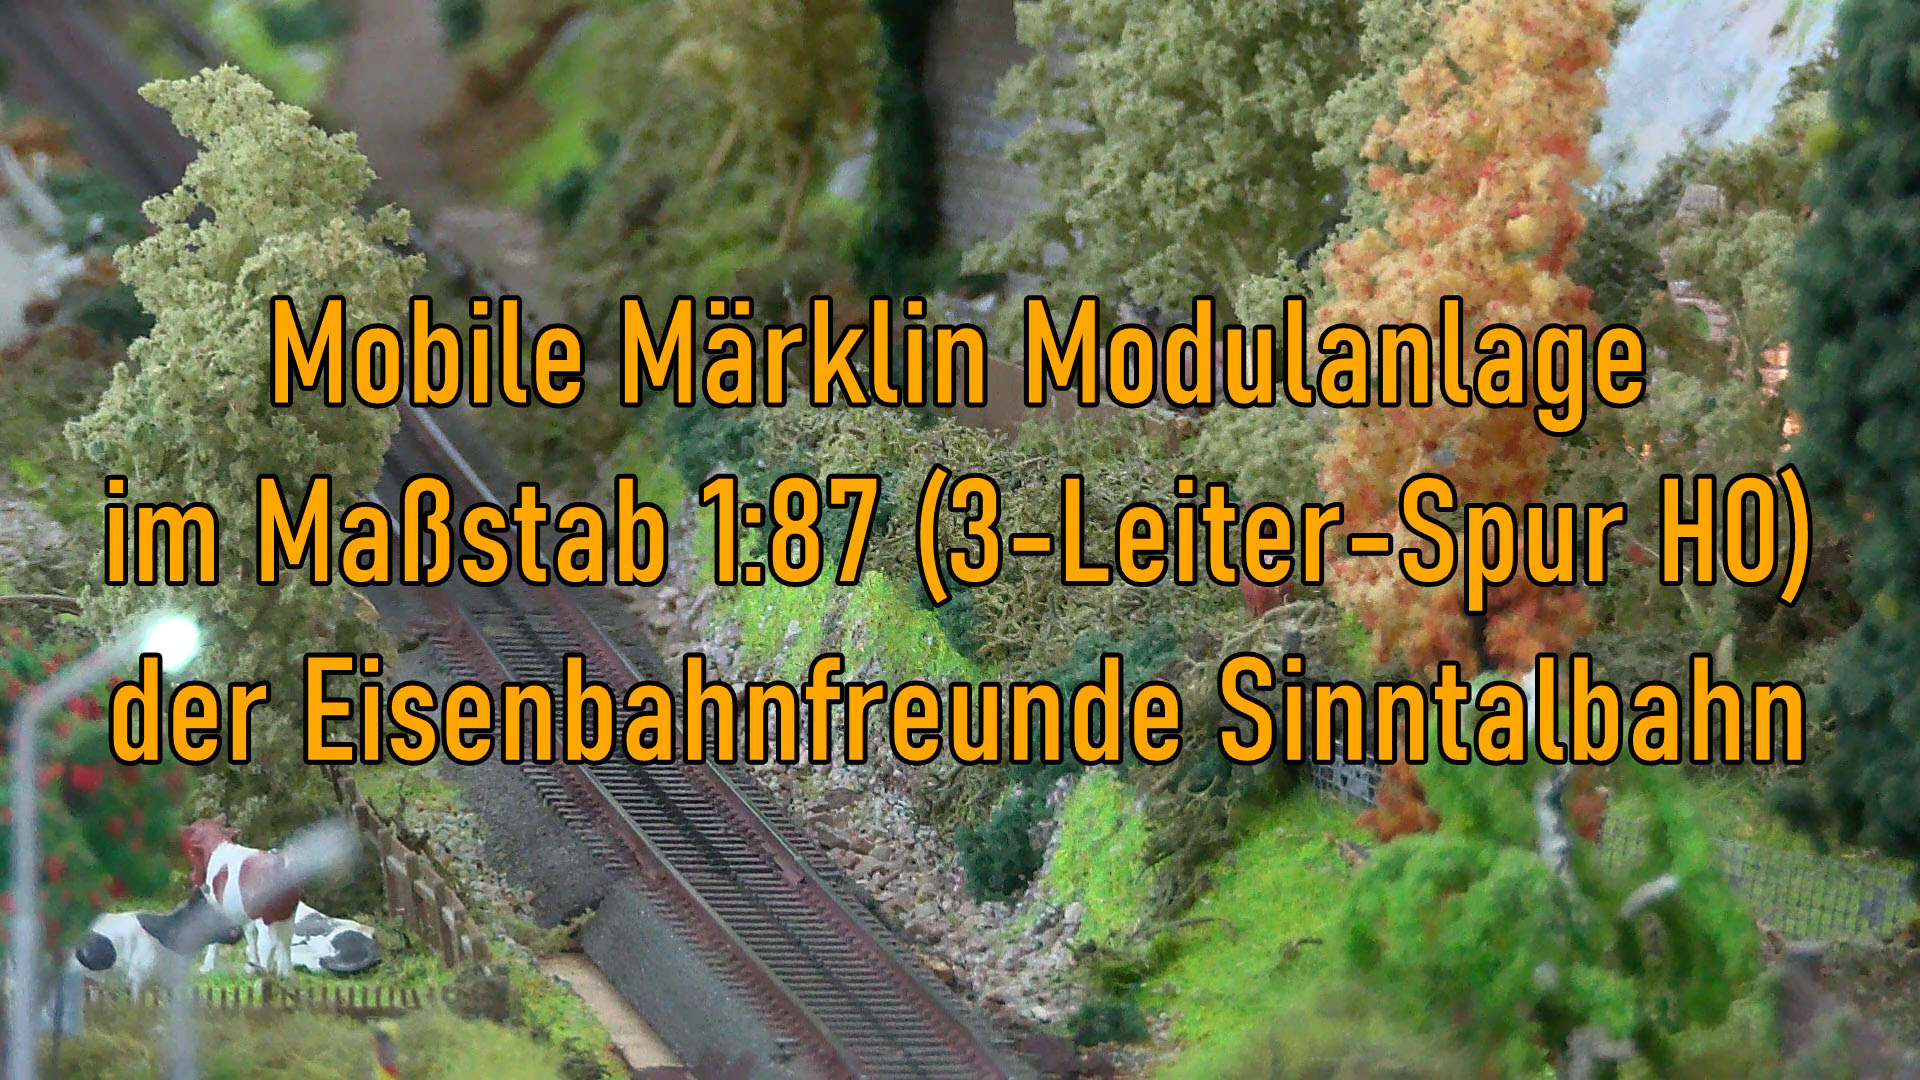 Märklin Modelleisenbahn der Eisenbahnfreunde Sinntalbahn - Eine 3-Leiter-Spur H0 Eisenbahnanlage